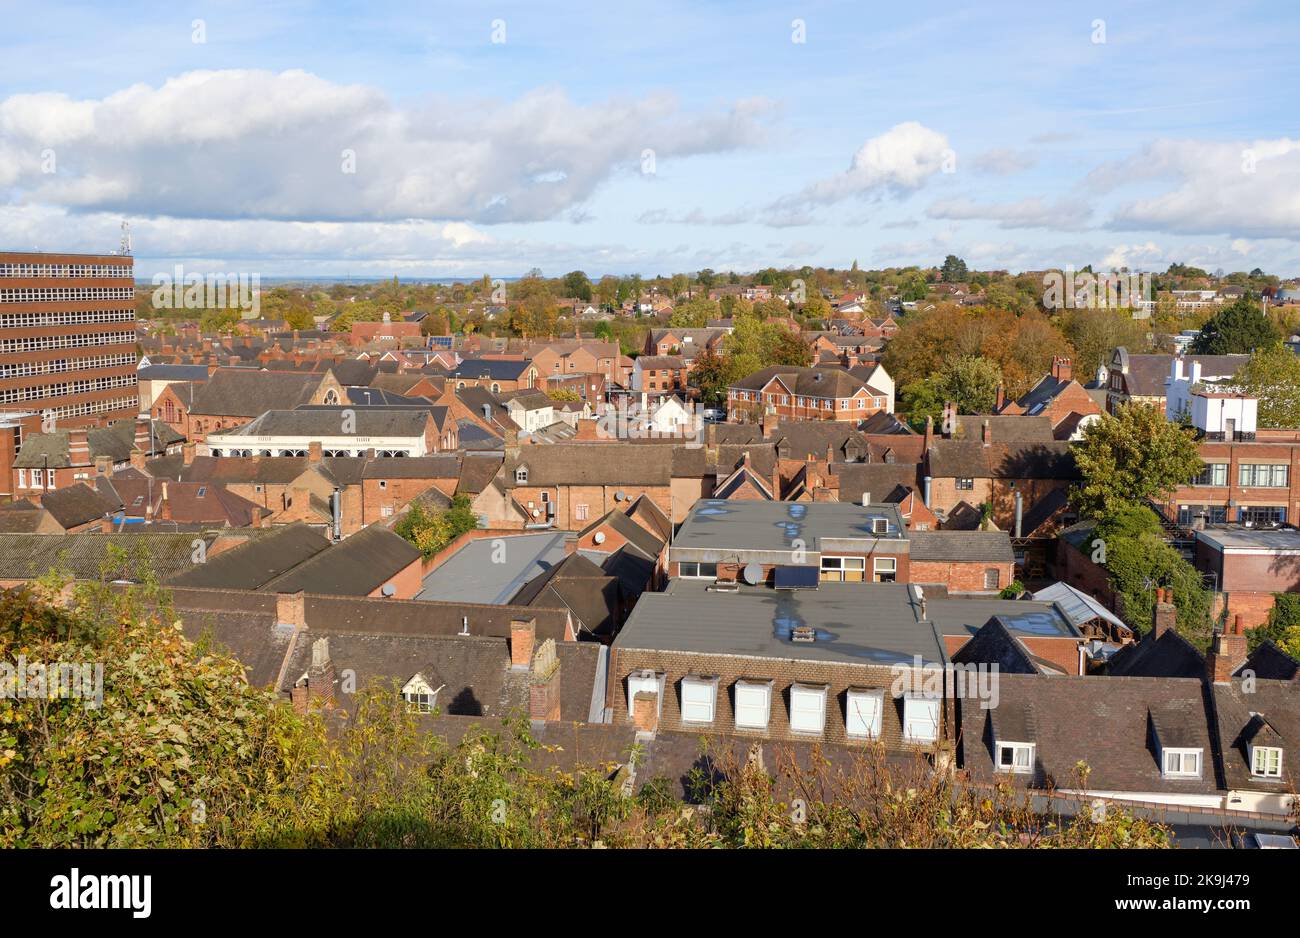 Townscape scene in Tamworth, UK Stock Photo